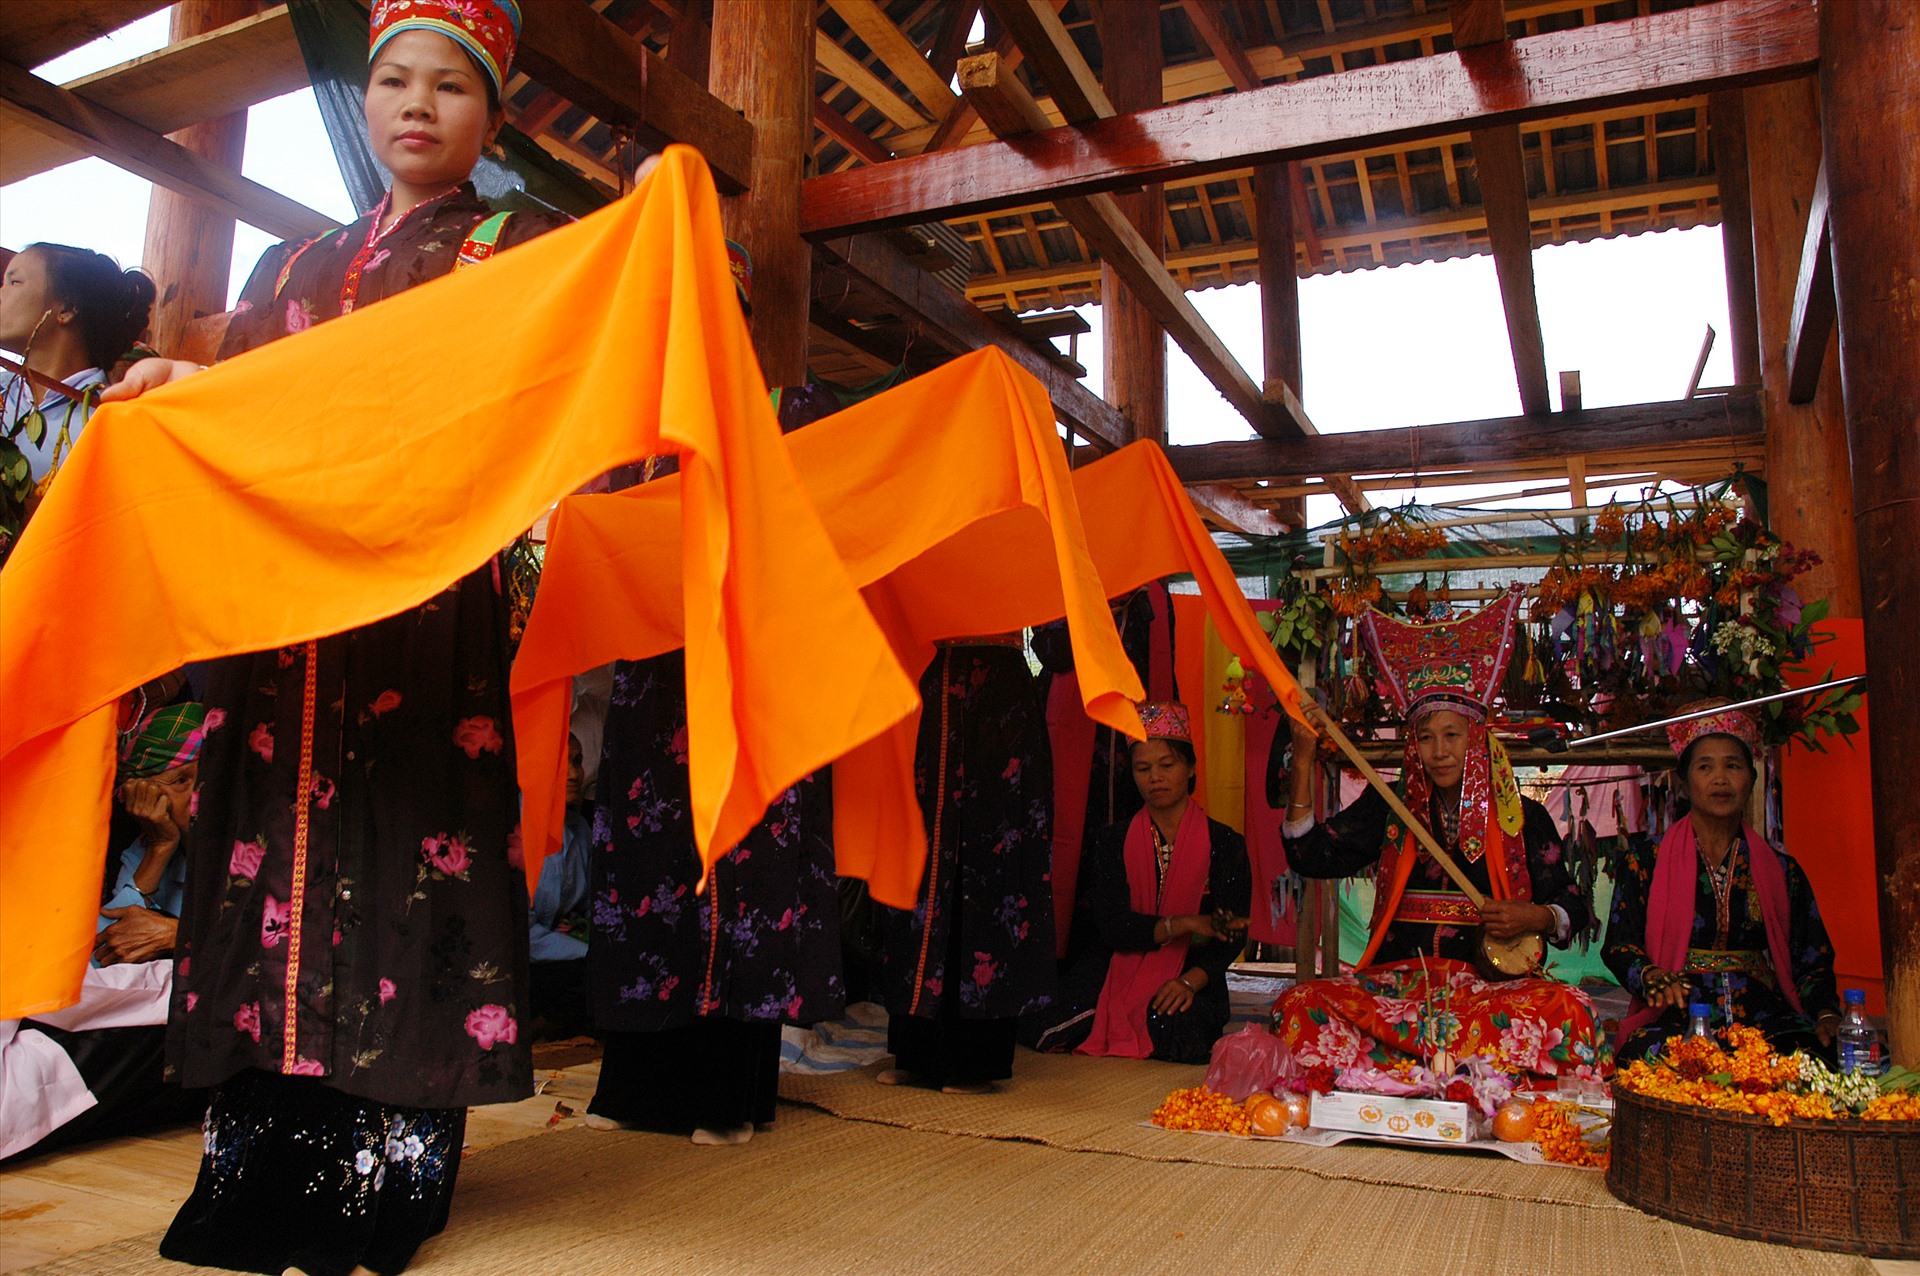 Lễ hội Then Kin Pang được người Thái trắng ở Khổng Lào (Phong Thổ, Lai Châu) tổ chức vào đầu mùa mưa của tháng 3 âm lịch để tạ ơn ông Then, bà Then và cầu mưa, cầu mùa, cầu phúc, cầu lộc cho cho gia đình và bản Mường. Ảnh: Thông Thiện